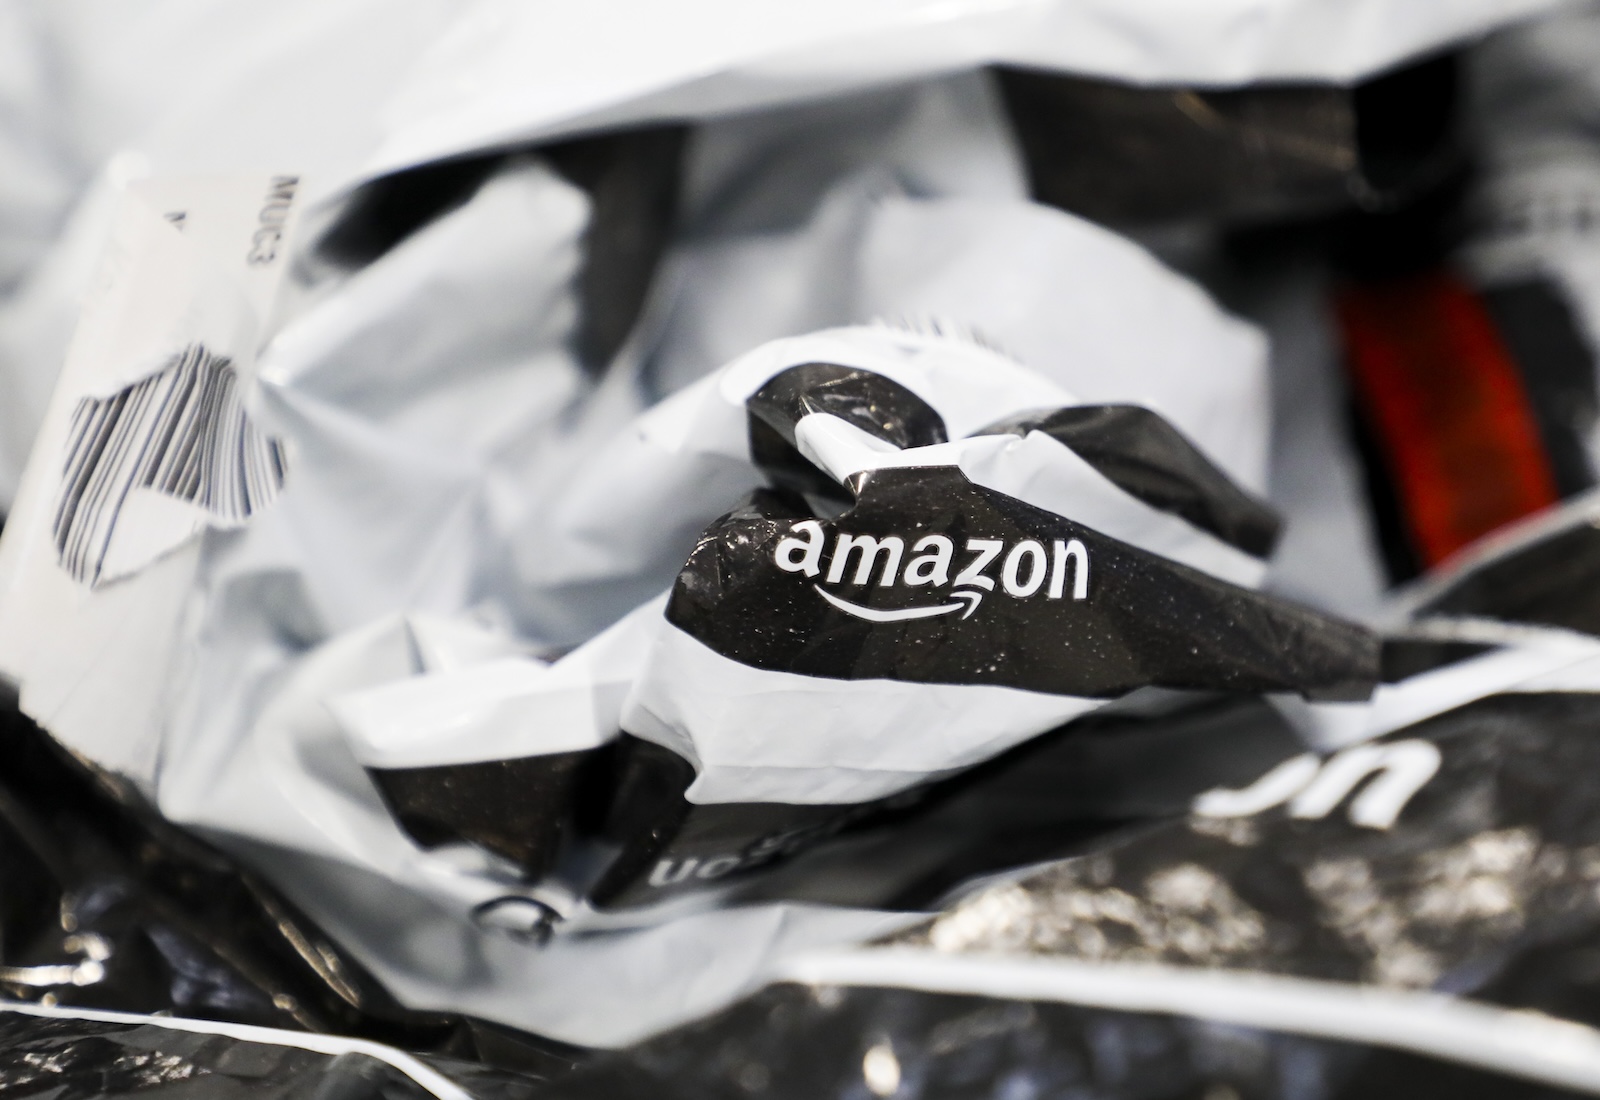 Amazon bag crumpled up